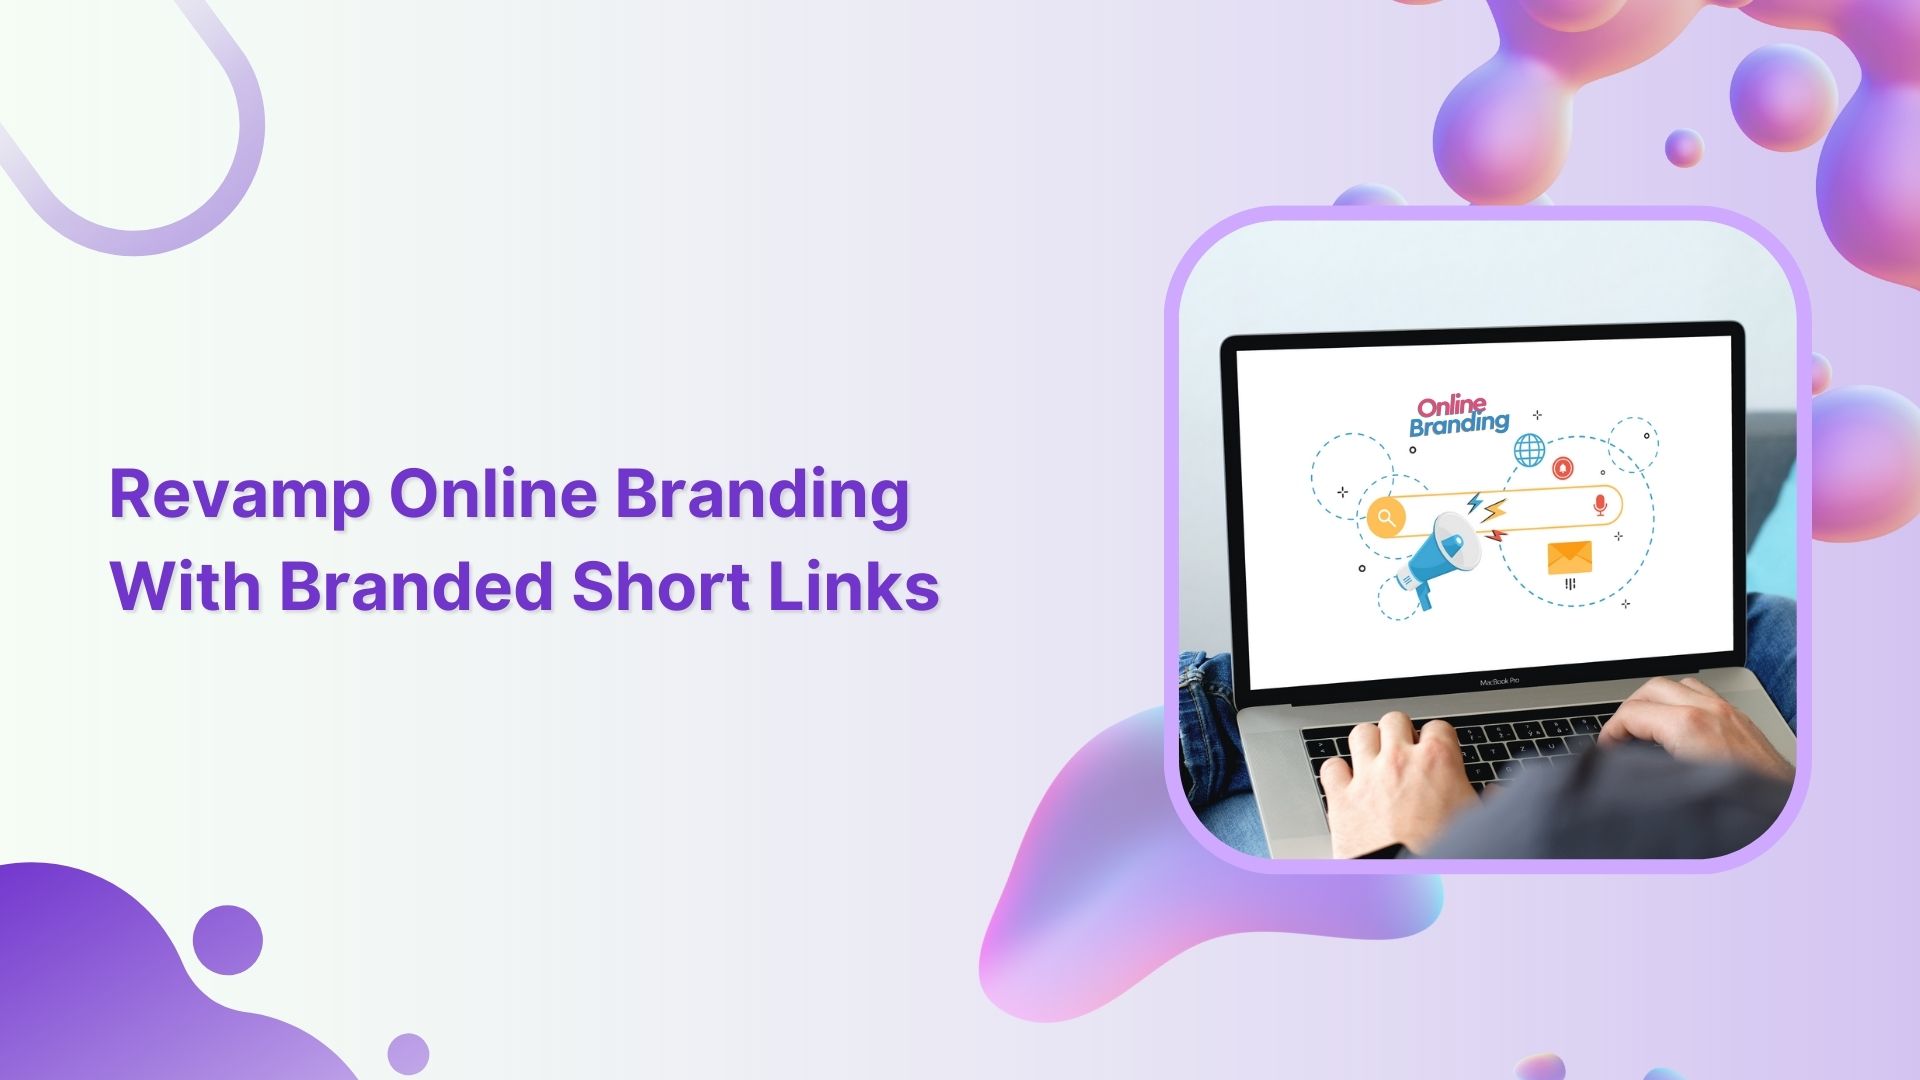 Branded short links